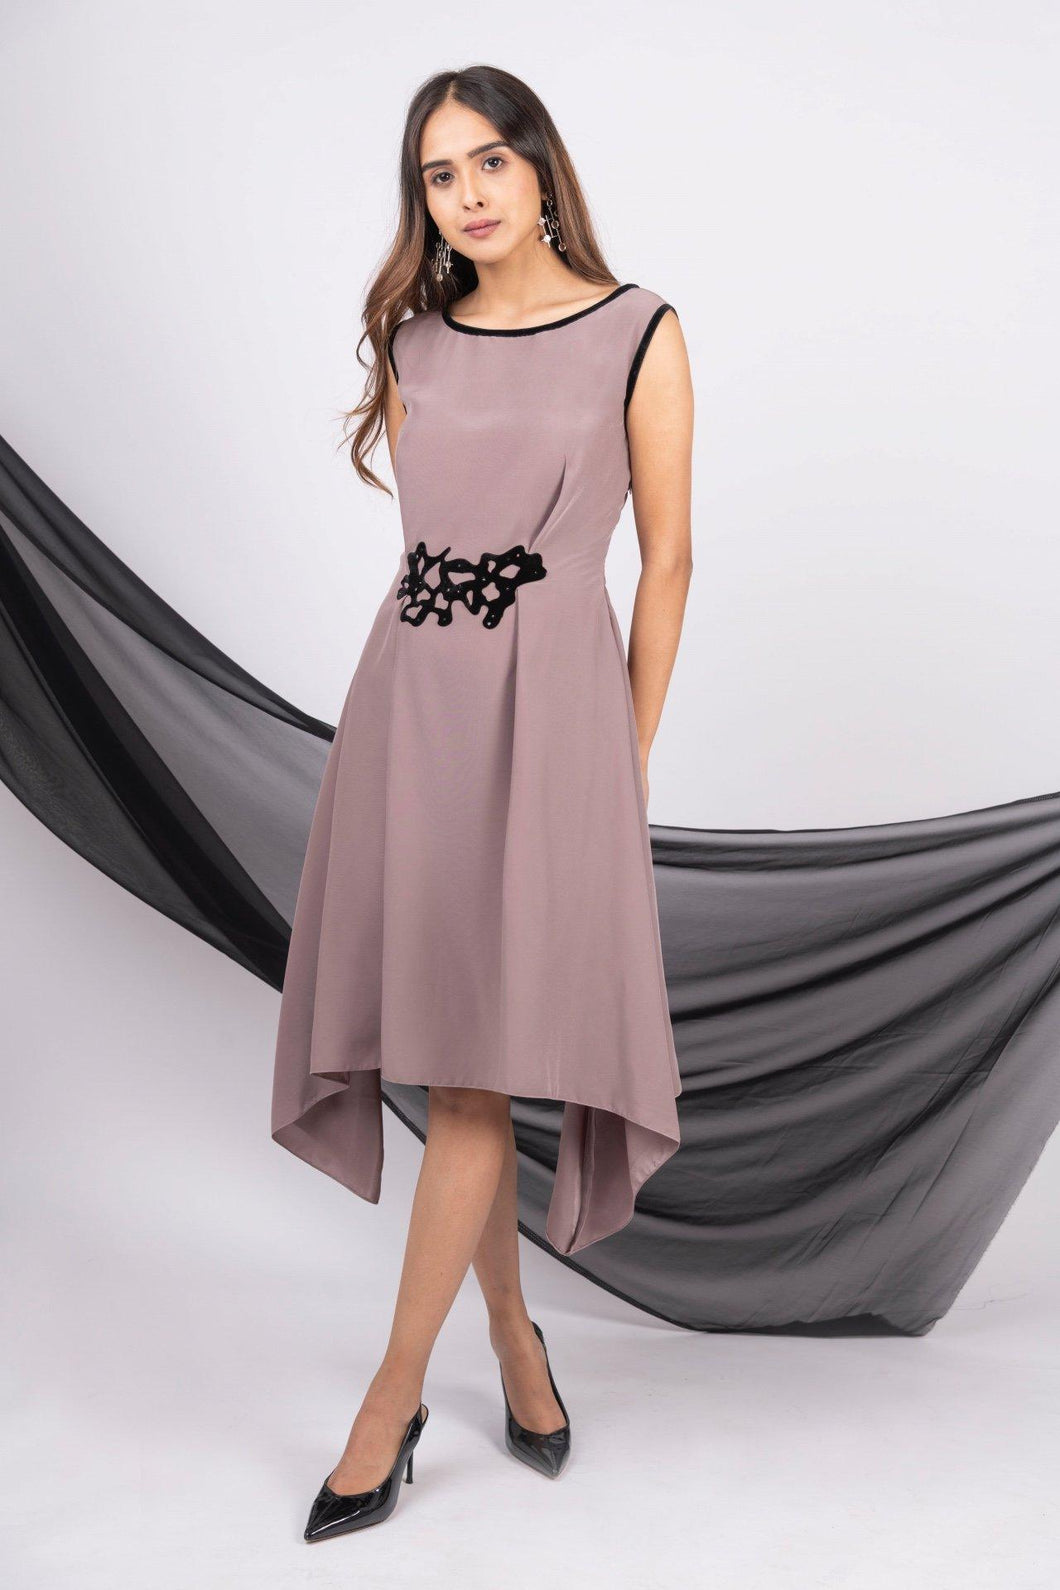 Asymmetric dress with pleats - Pranati Kejriwall